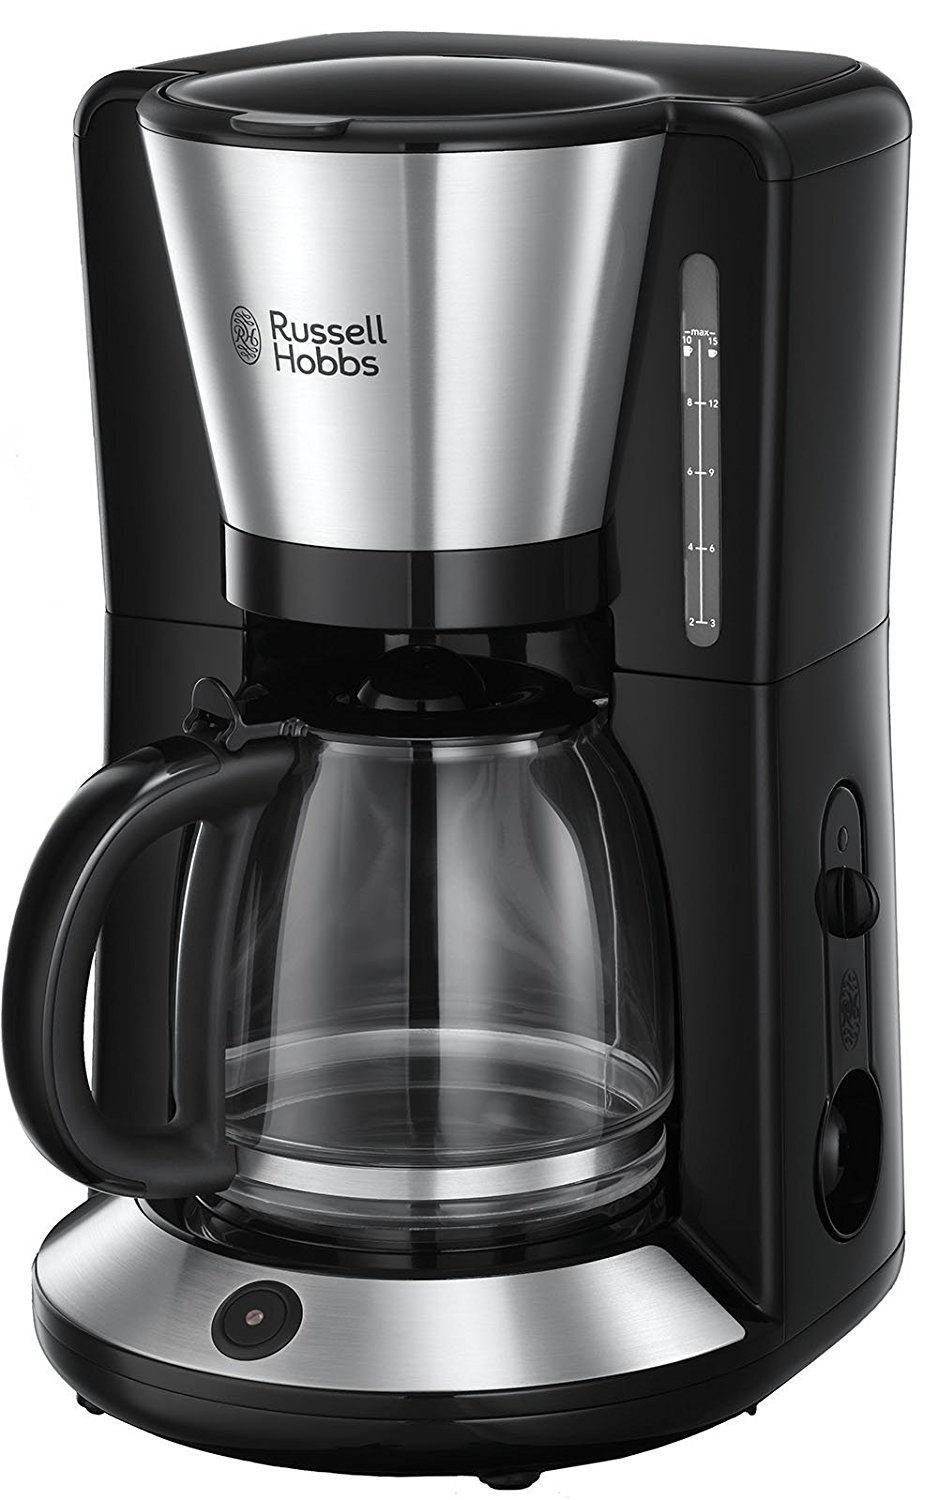 RUSSELL HOBBS Filterkaffeemaschine Adventure 24010-56 Glas 10 Tassen 1,25L 1100 W, mit Glaskanne